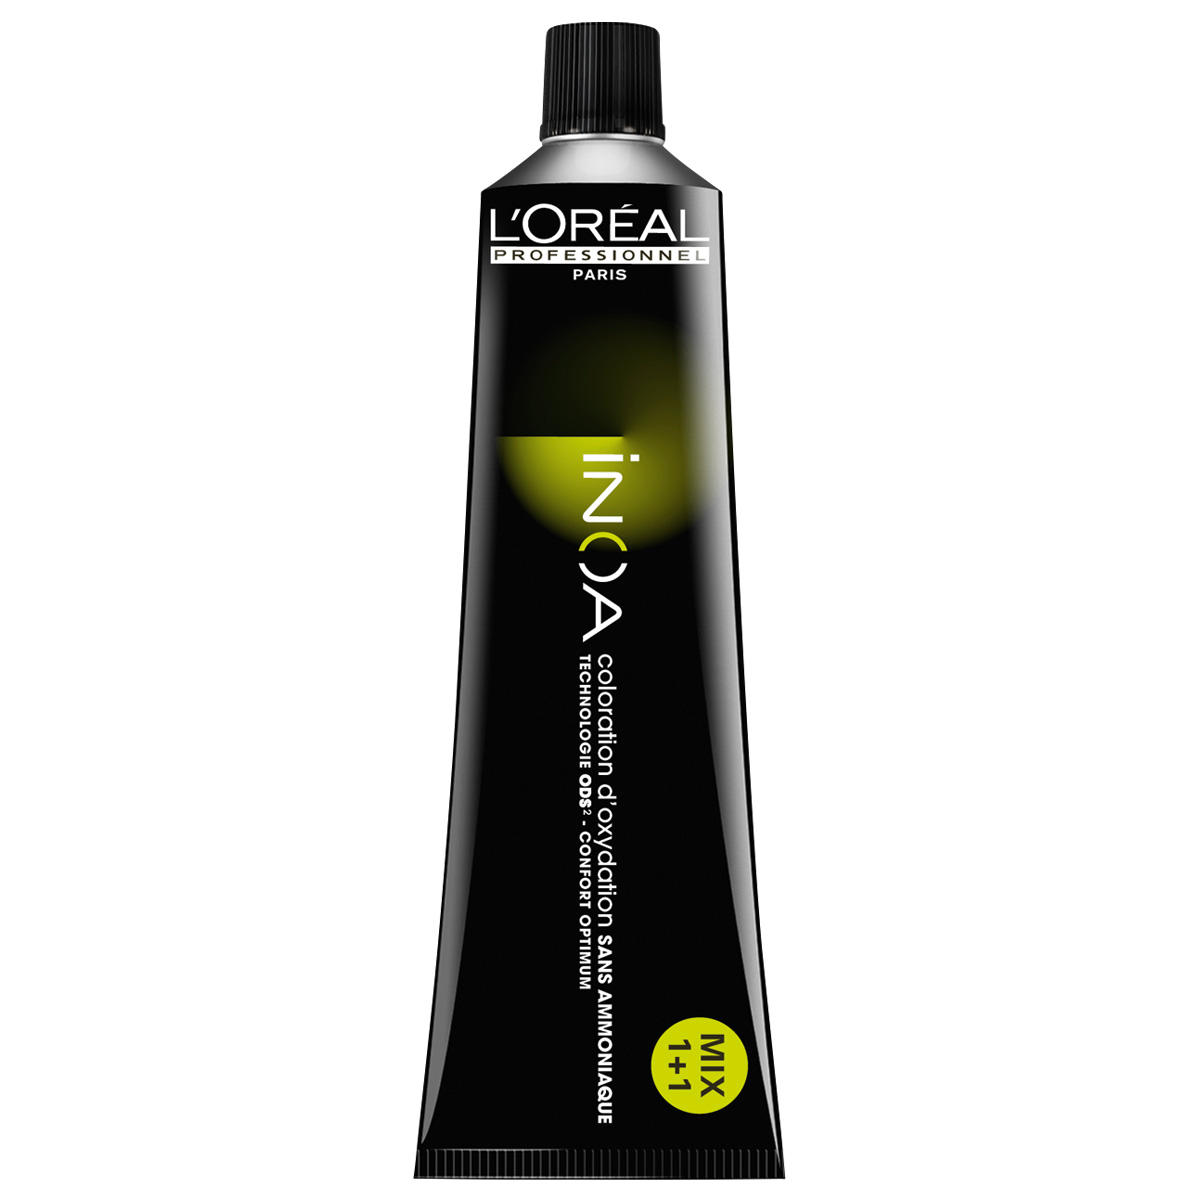 L'Oréal Professionnel Paris Coloration 5.8 Lichtbruine mokka, tube 60 ml - 1